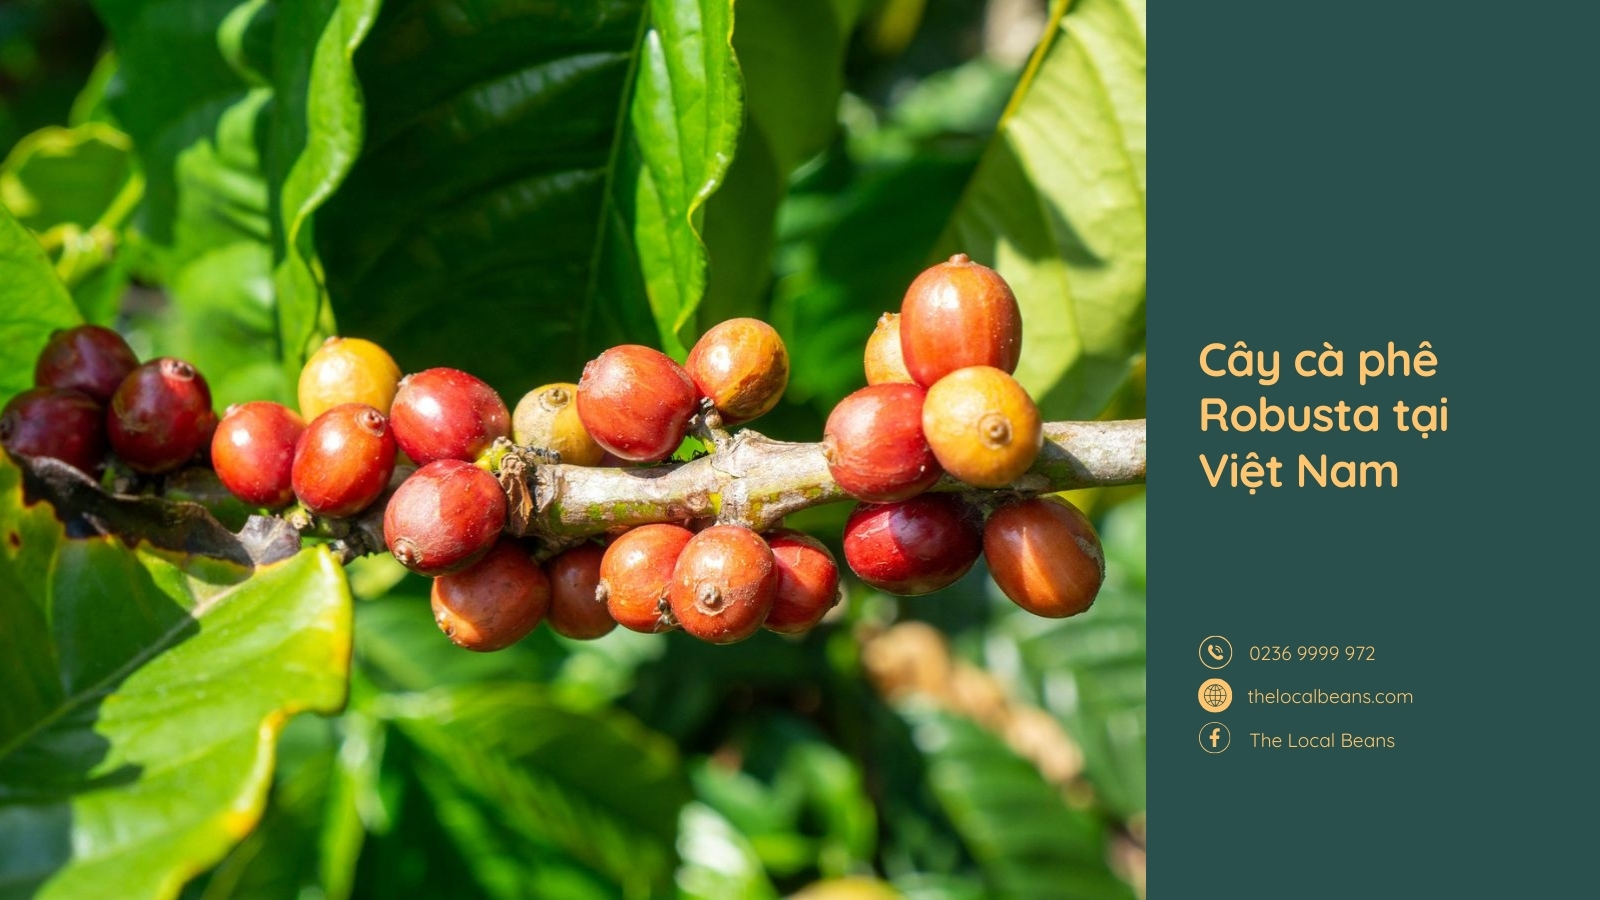 hình ảnh cây cà phê và quả cà phê robusta